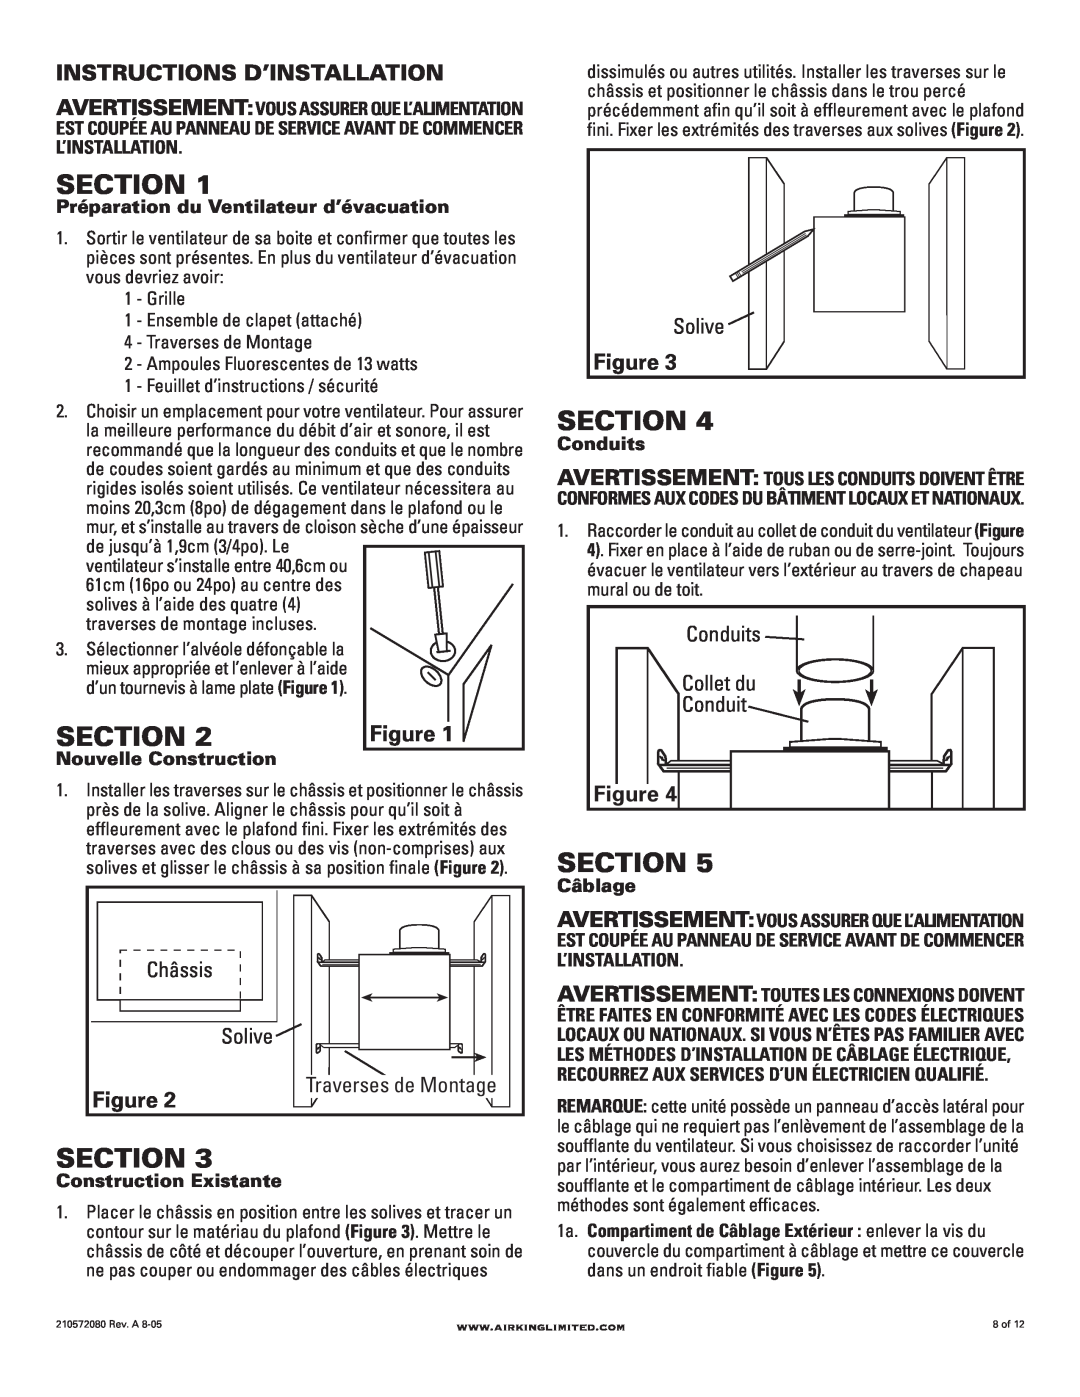 Air King AK80LSL manual Instructions D’Installation, Section, Collet du, Préparation du Ventilateur d’évacuation, Conduits 